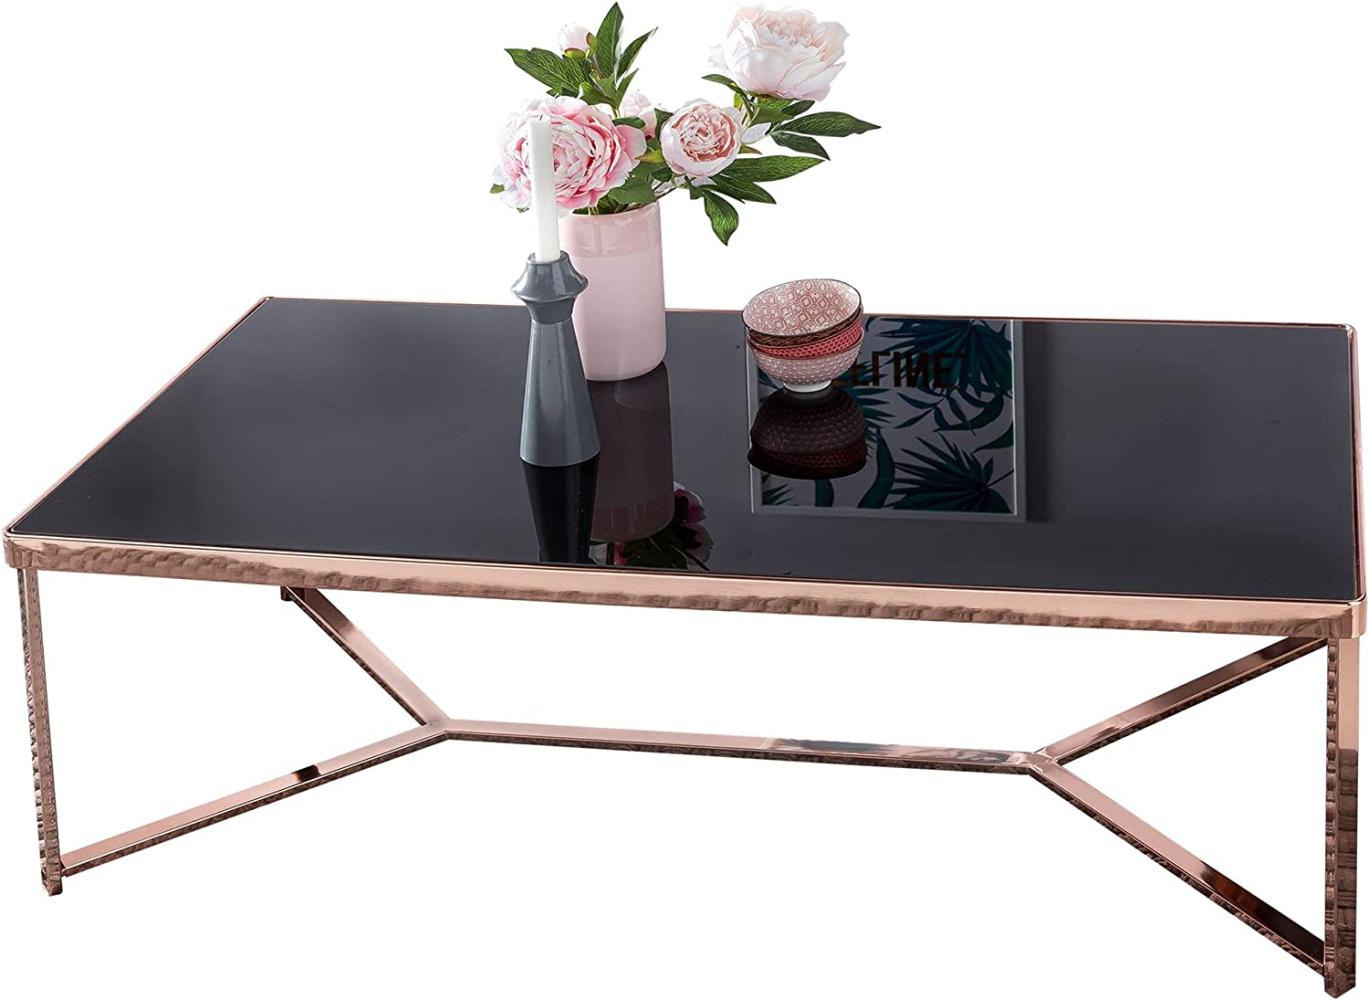 KADIMA DESIGN Glas und Kupfer Couchtisch - Stylischer Tisch mit großer Tischplatte für Wohnzimmer. Bild 1